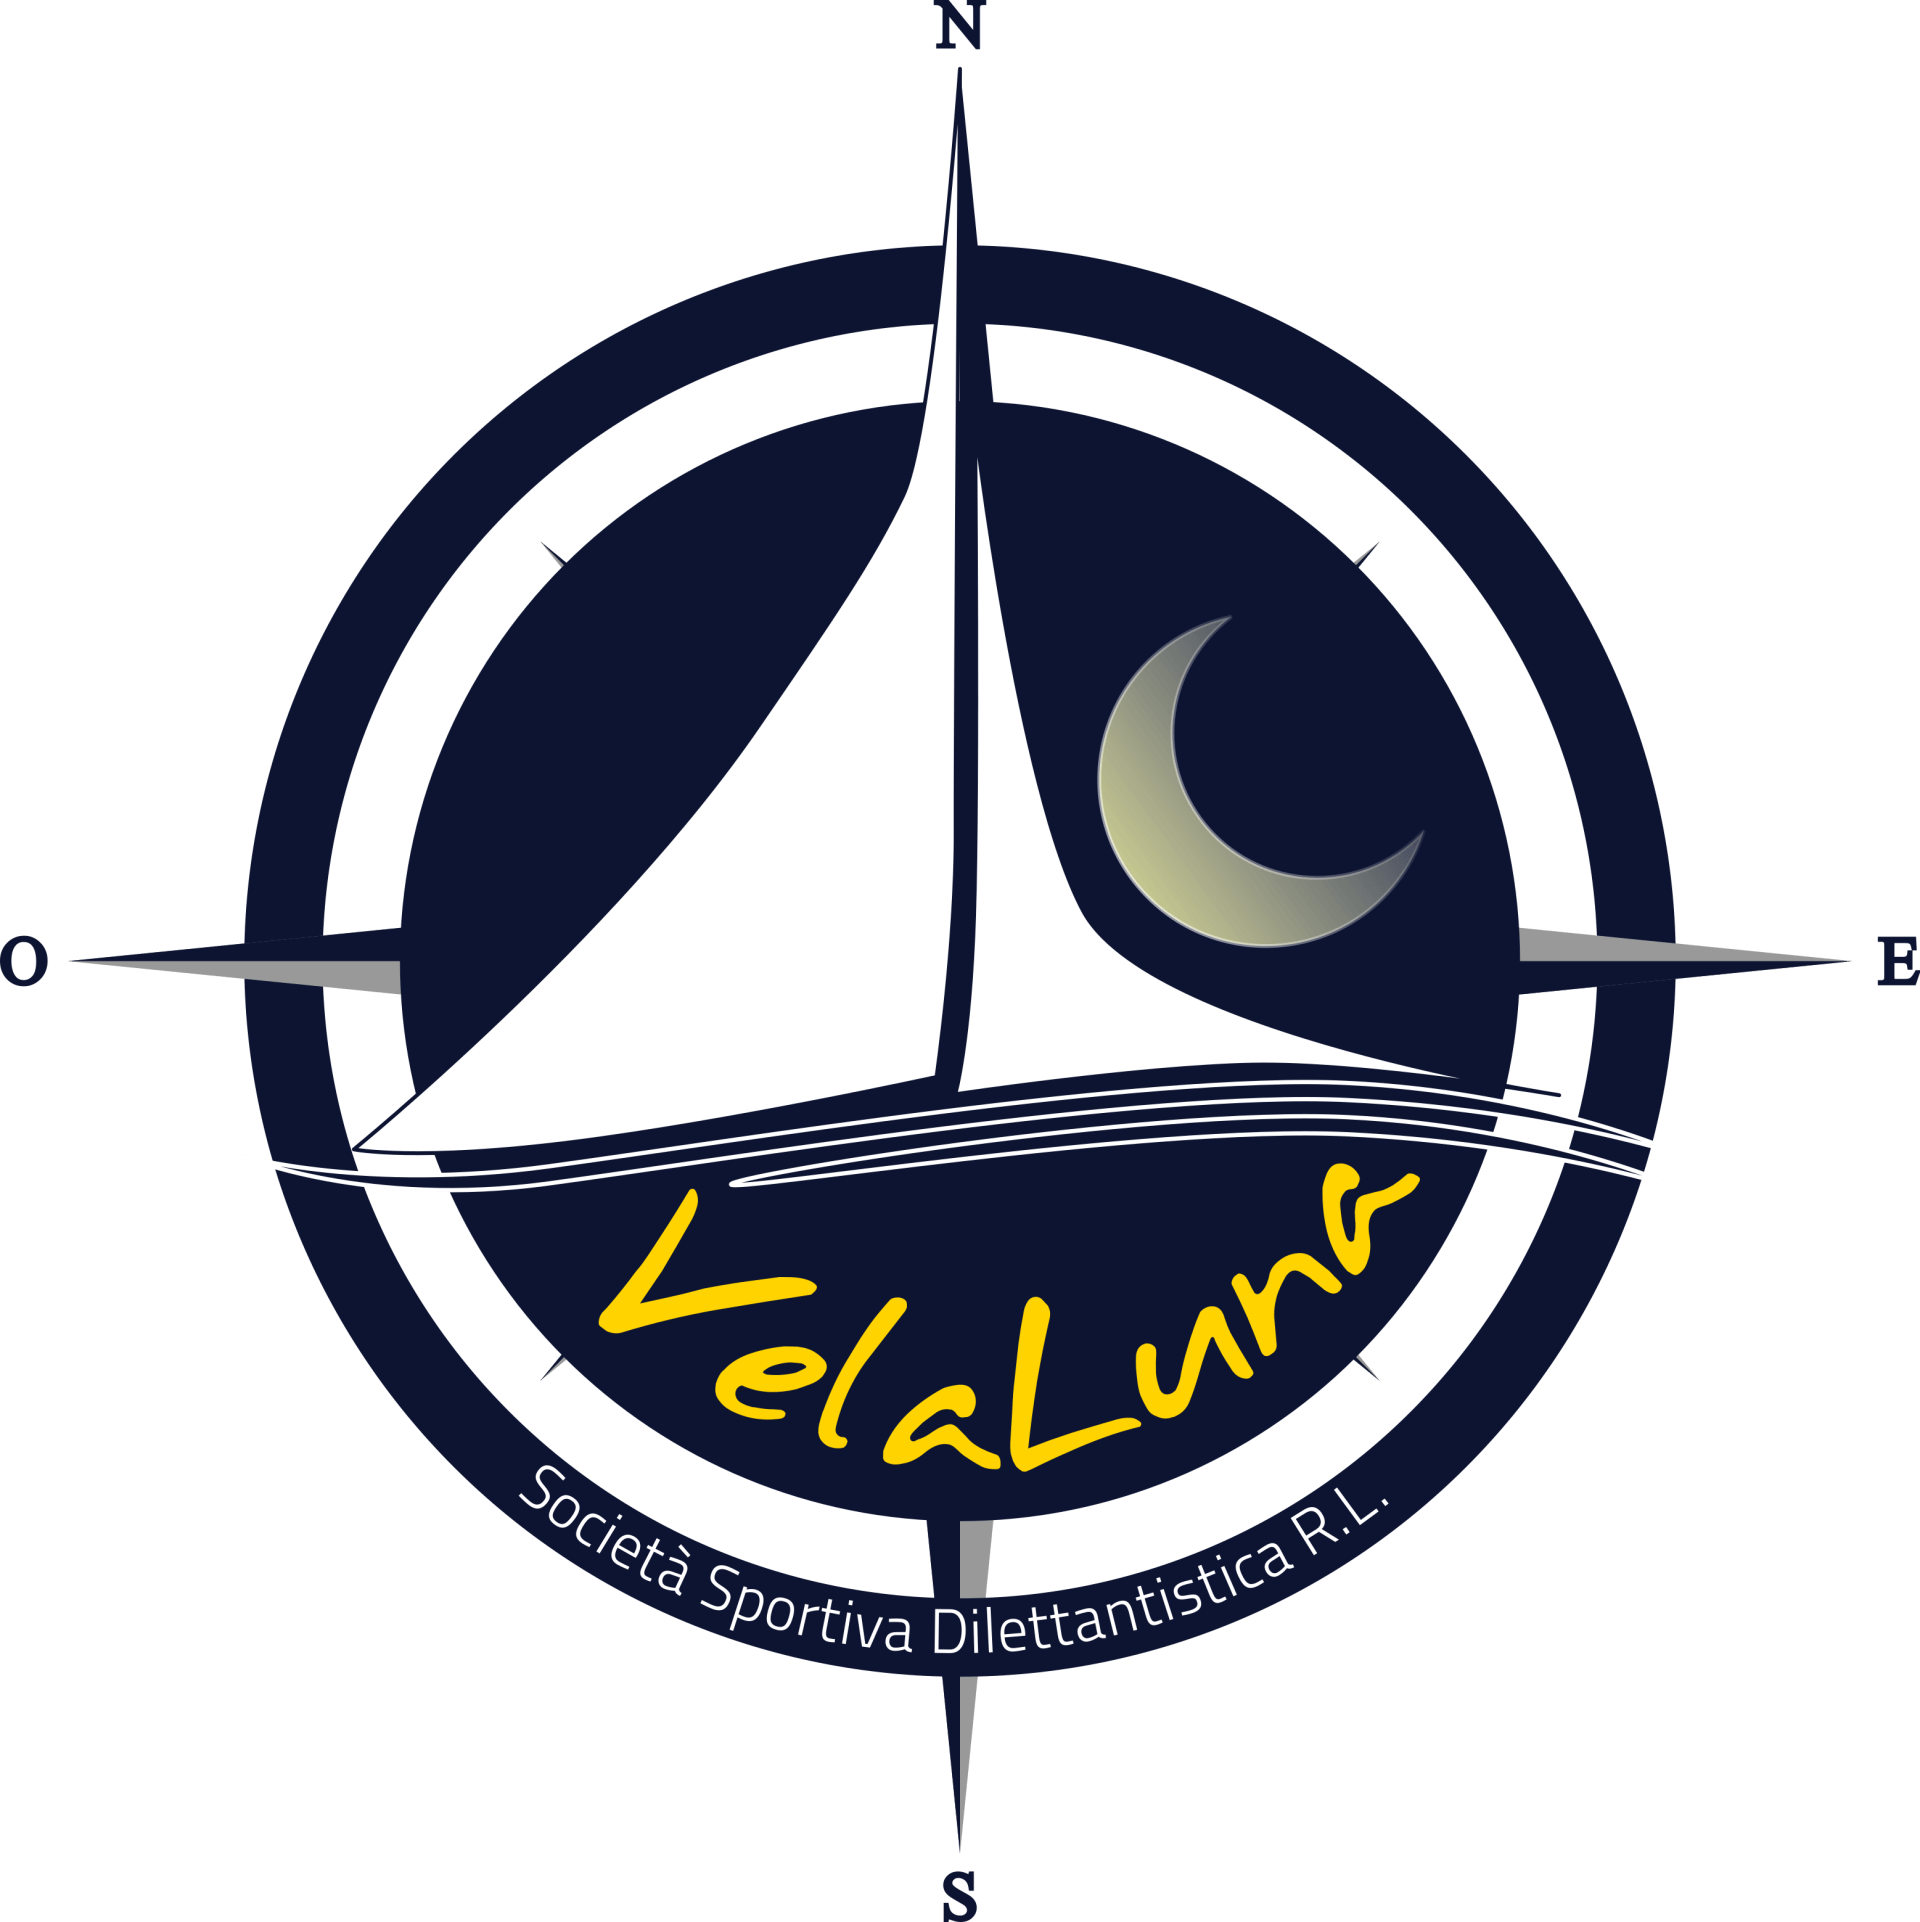 Un logo per vela luna con una barca a vela al centro